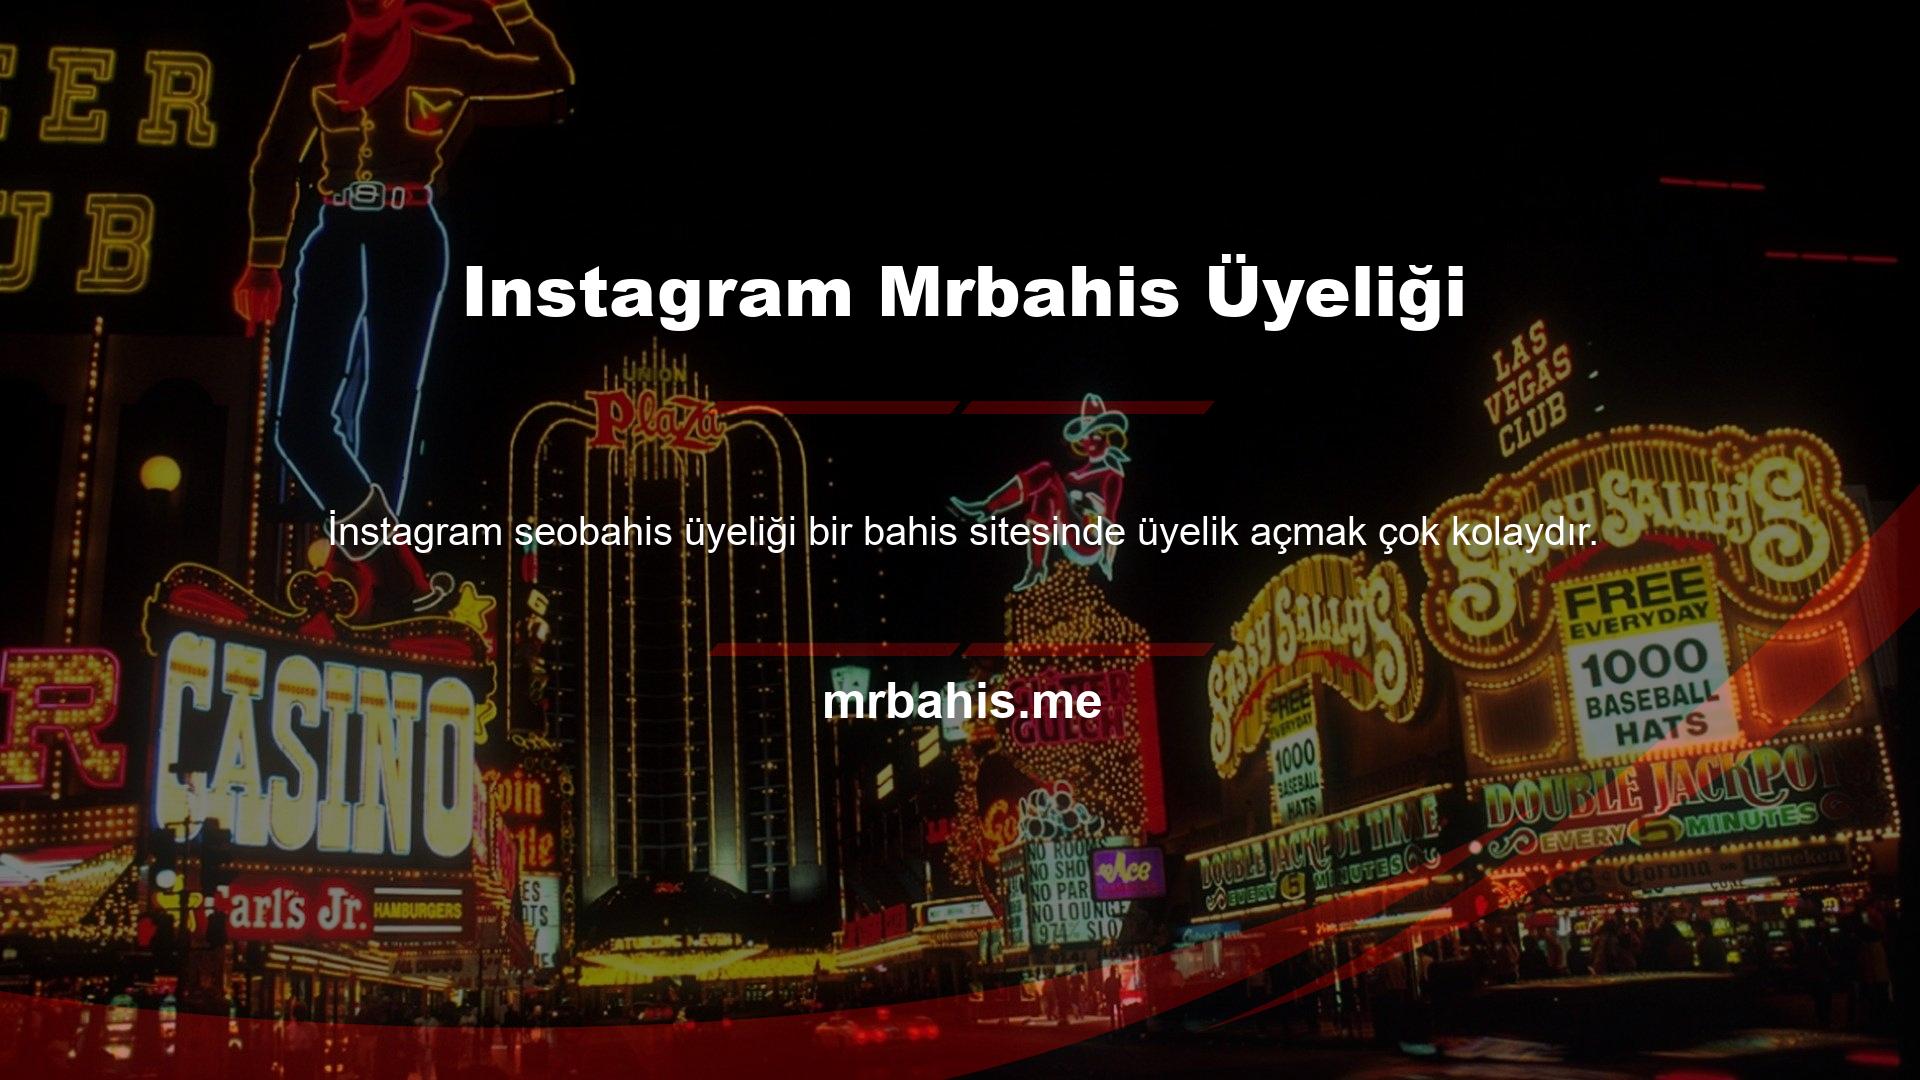 Mrbahis Üyeliği Mrbahis Instagram üyeliği tamamen ücretsiz ve kolaydır